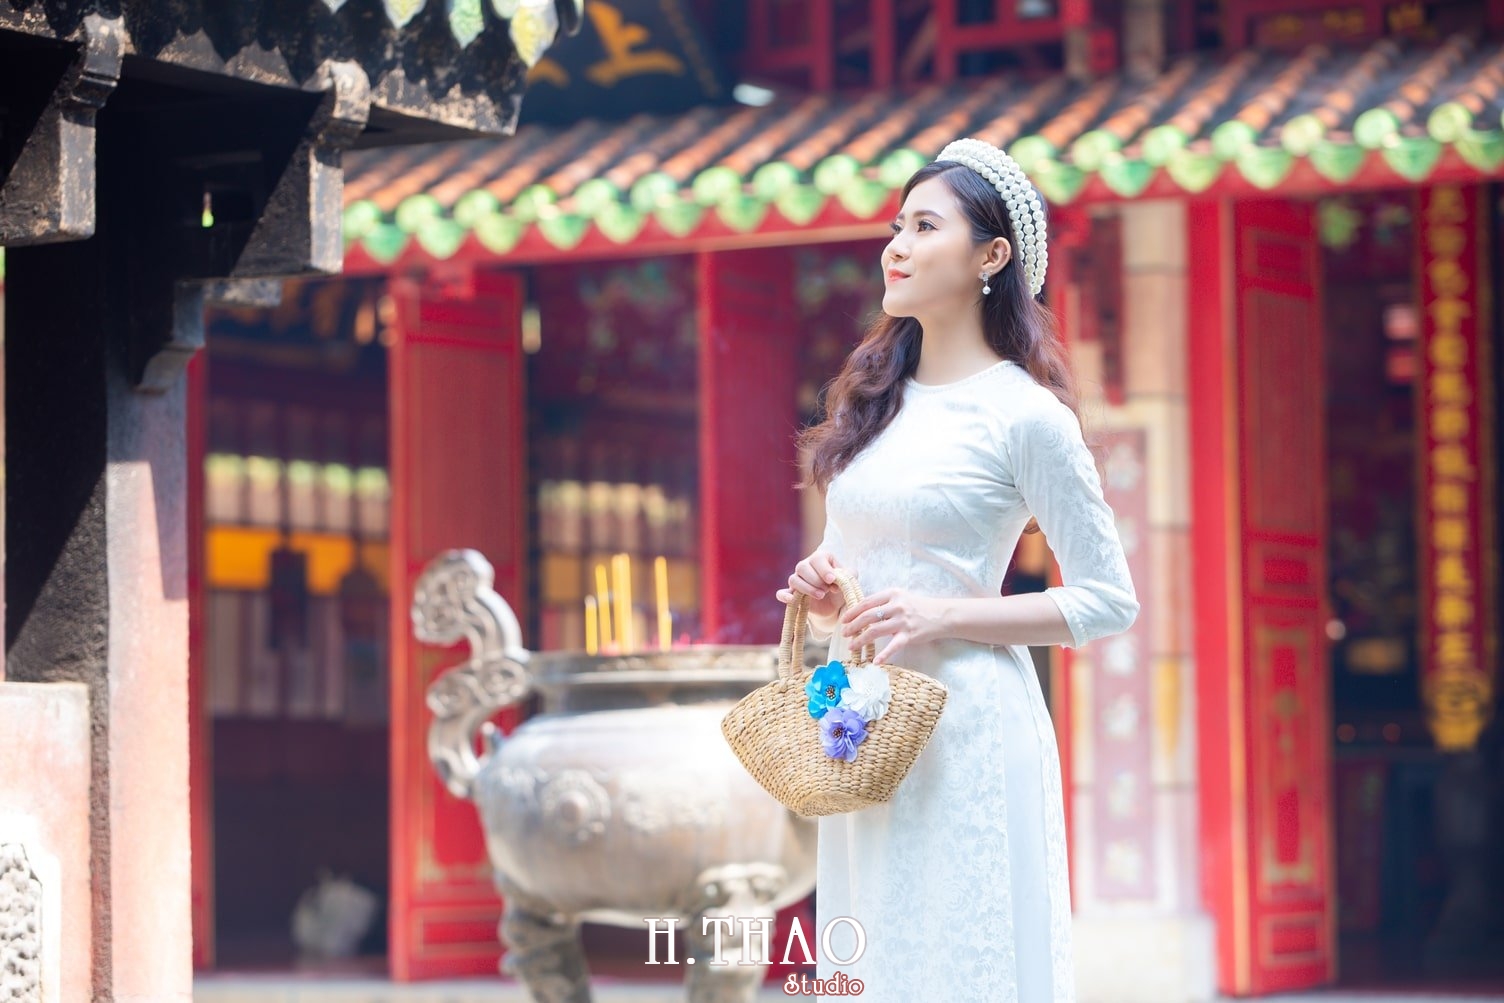 Ao dai Lang ong ba chieu 4 - Chụp ảnh áo dài ở lăng ông bà chiểu kiểu truyền thống tuyệt đẹp